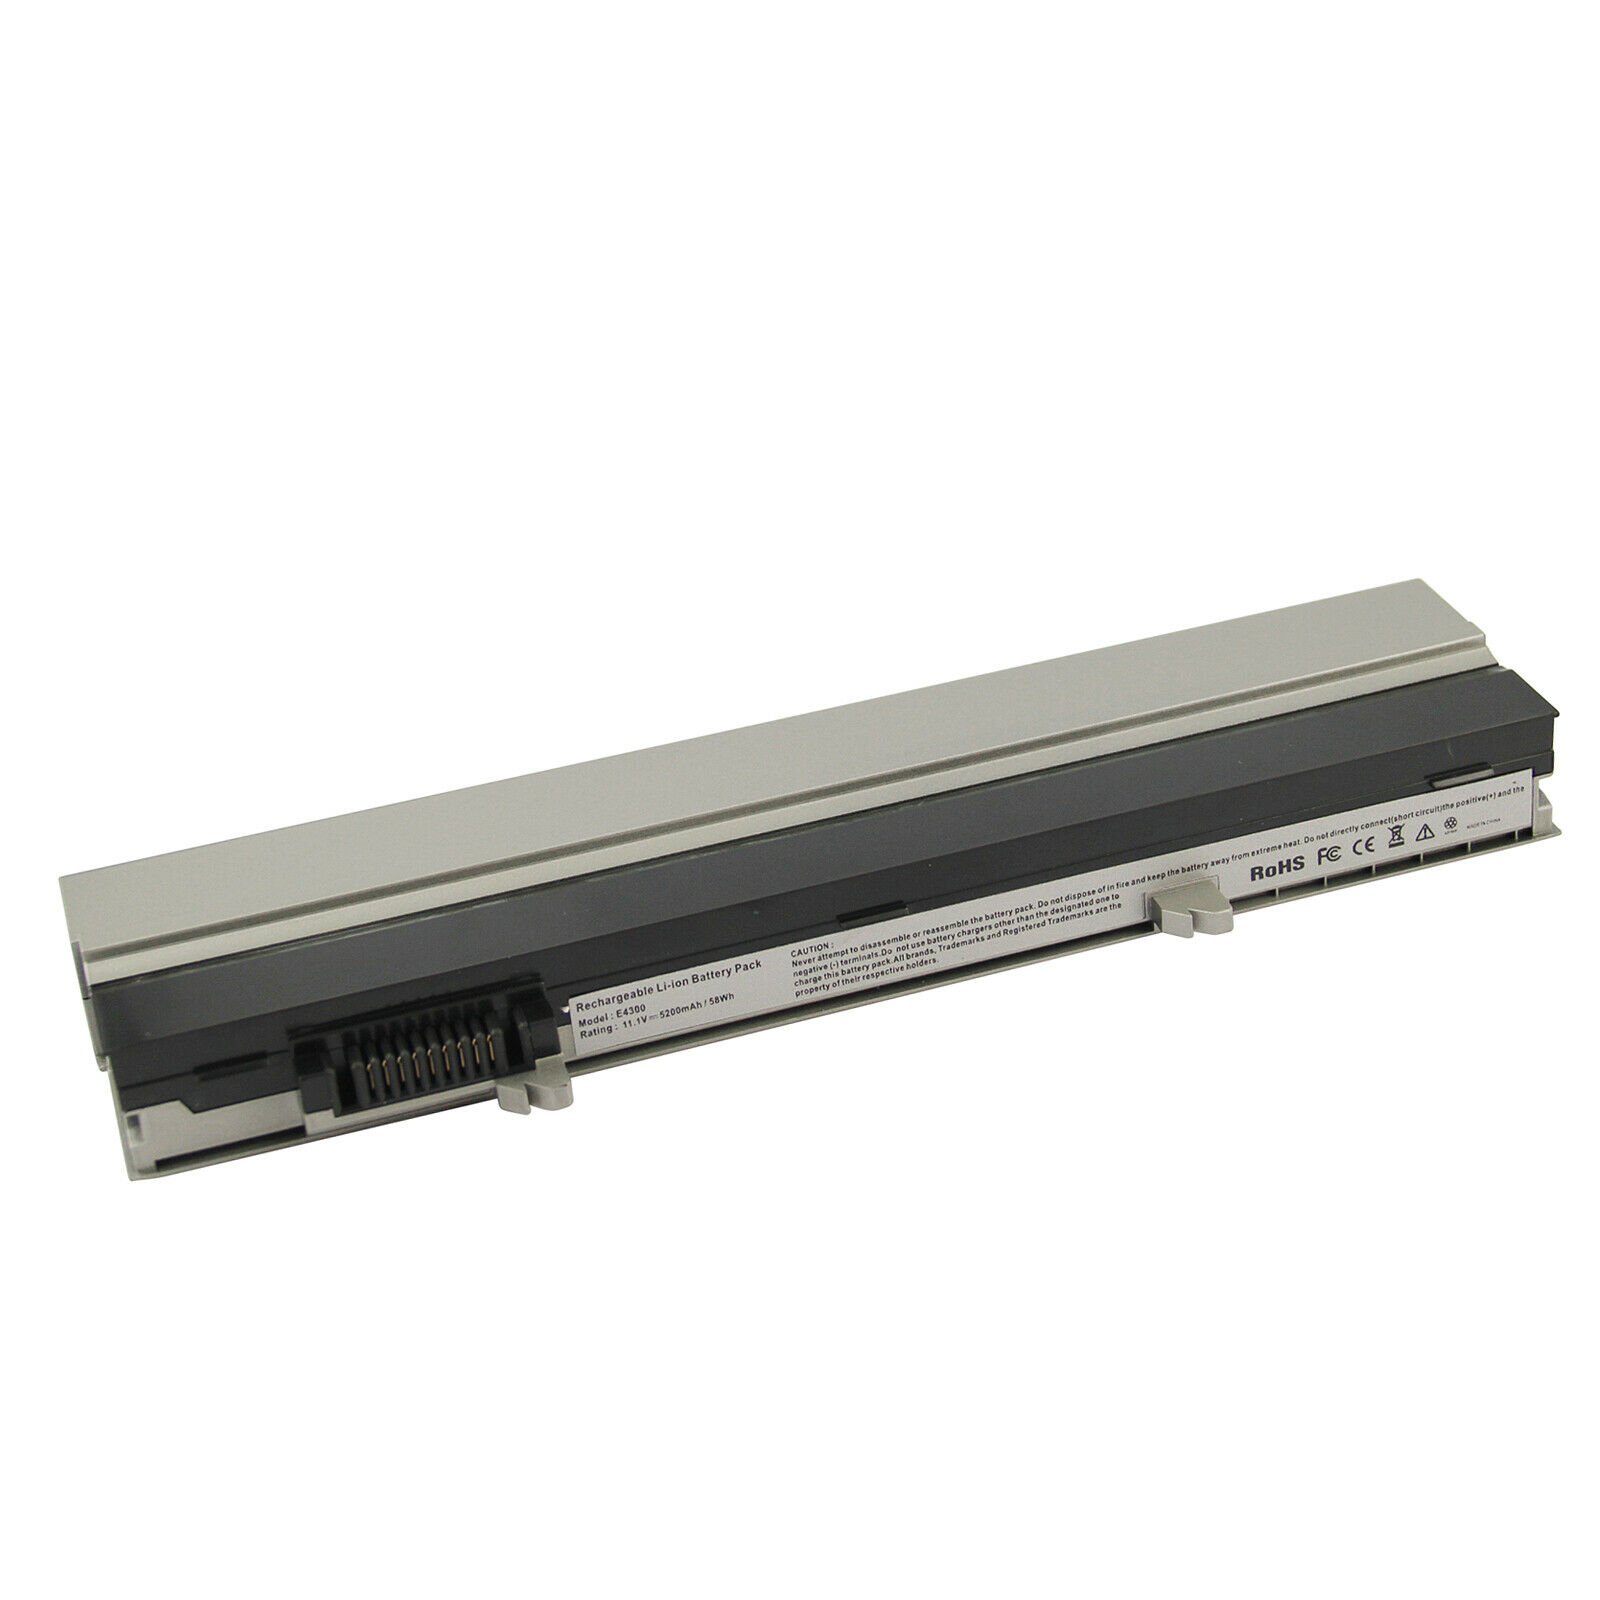 Batri Gliniadur E4300 ar gyfer Dell Latitude E4310 XX327 R3026 FM338 PFF30